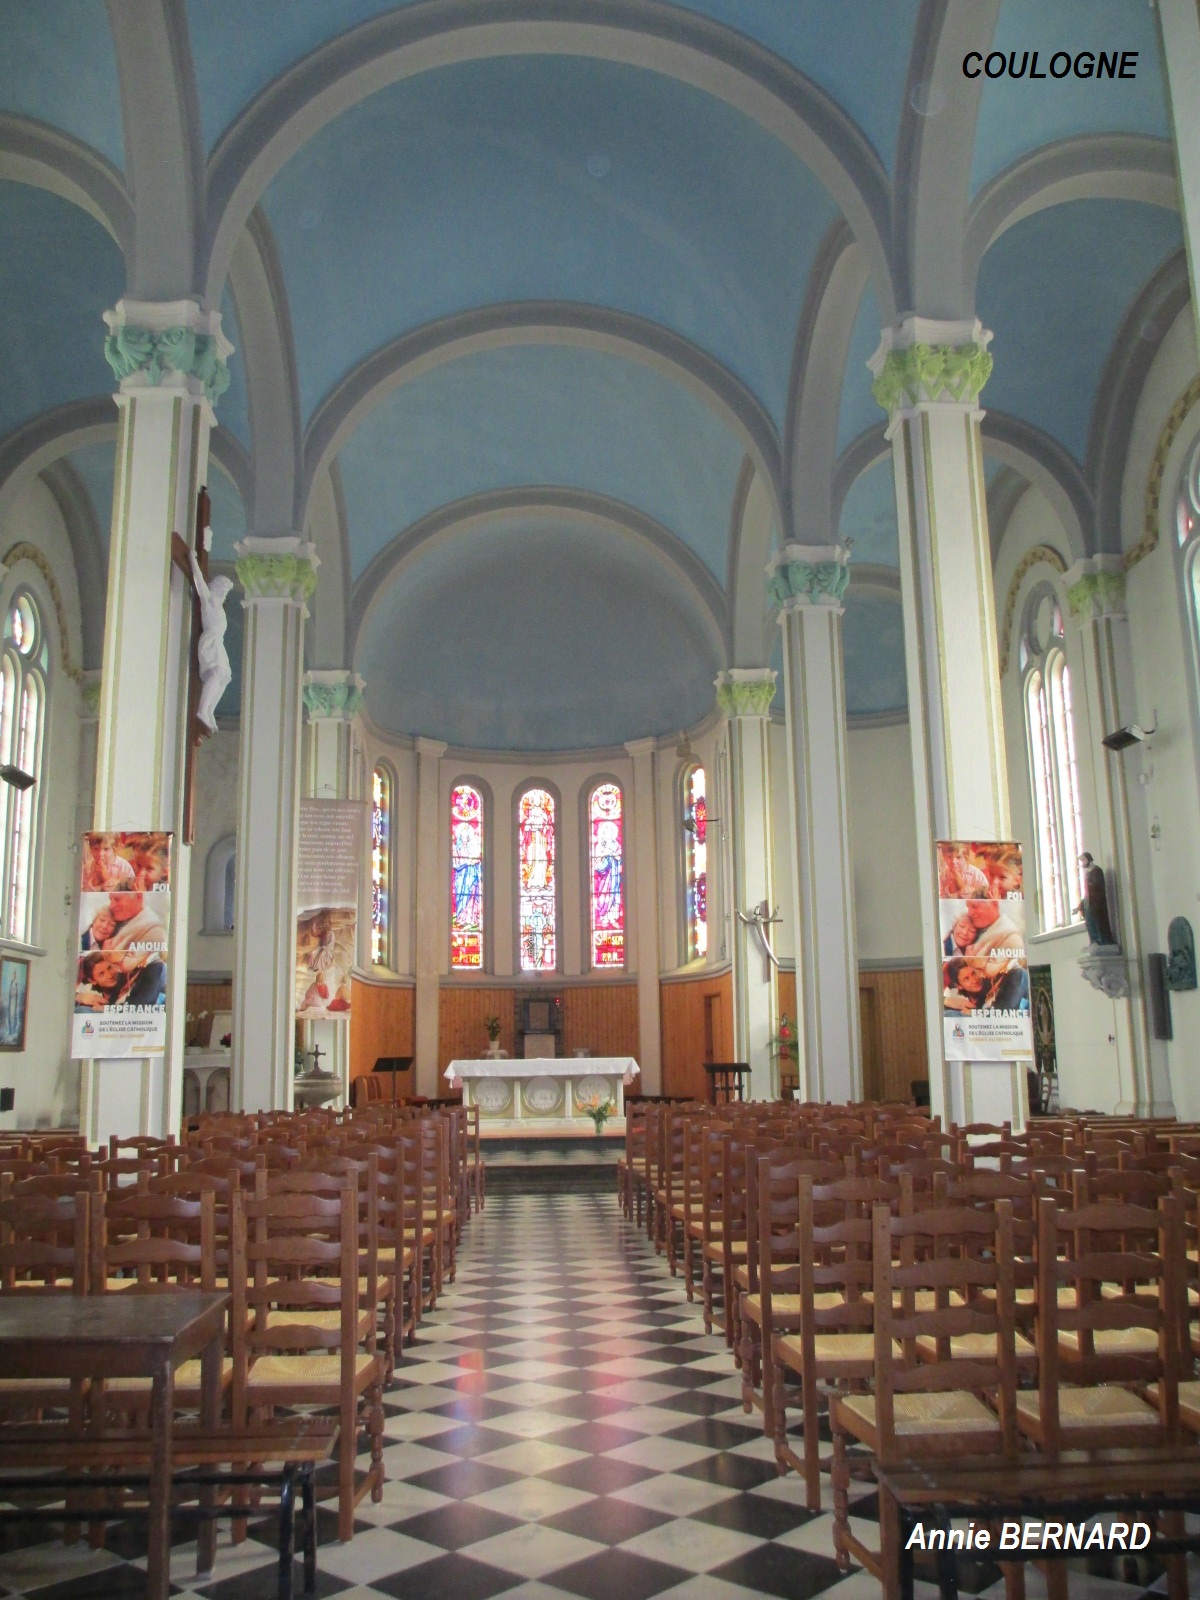 L'intérieur de l'église Saint-Jacques de Coulogne